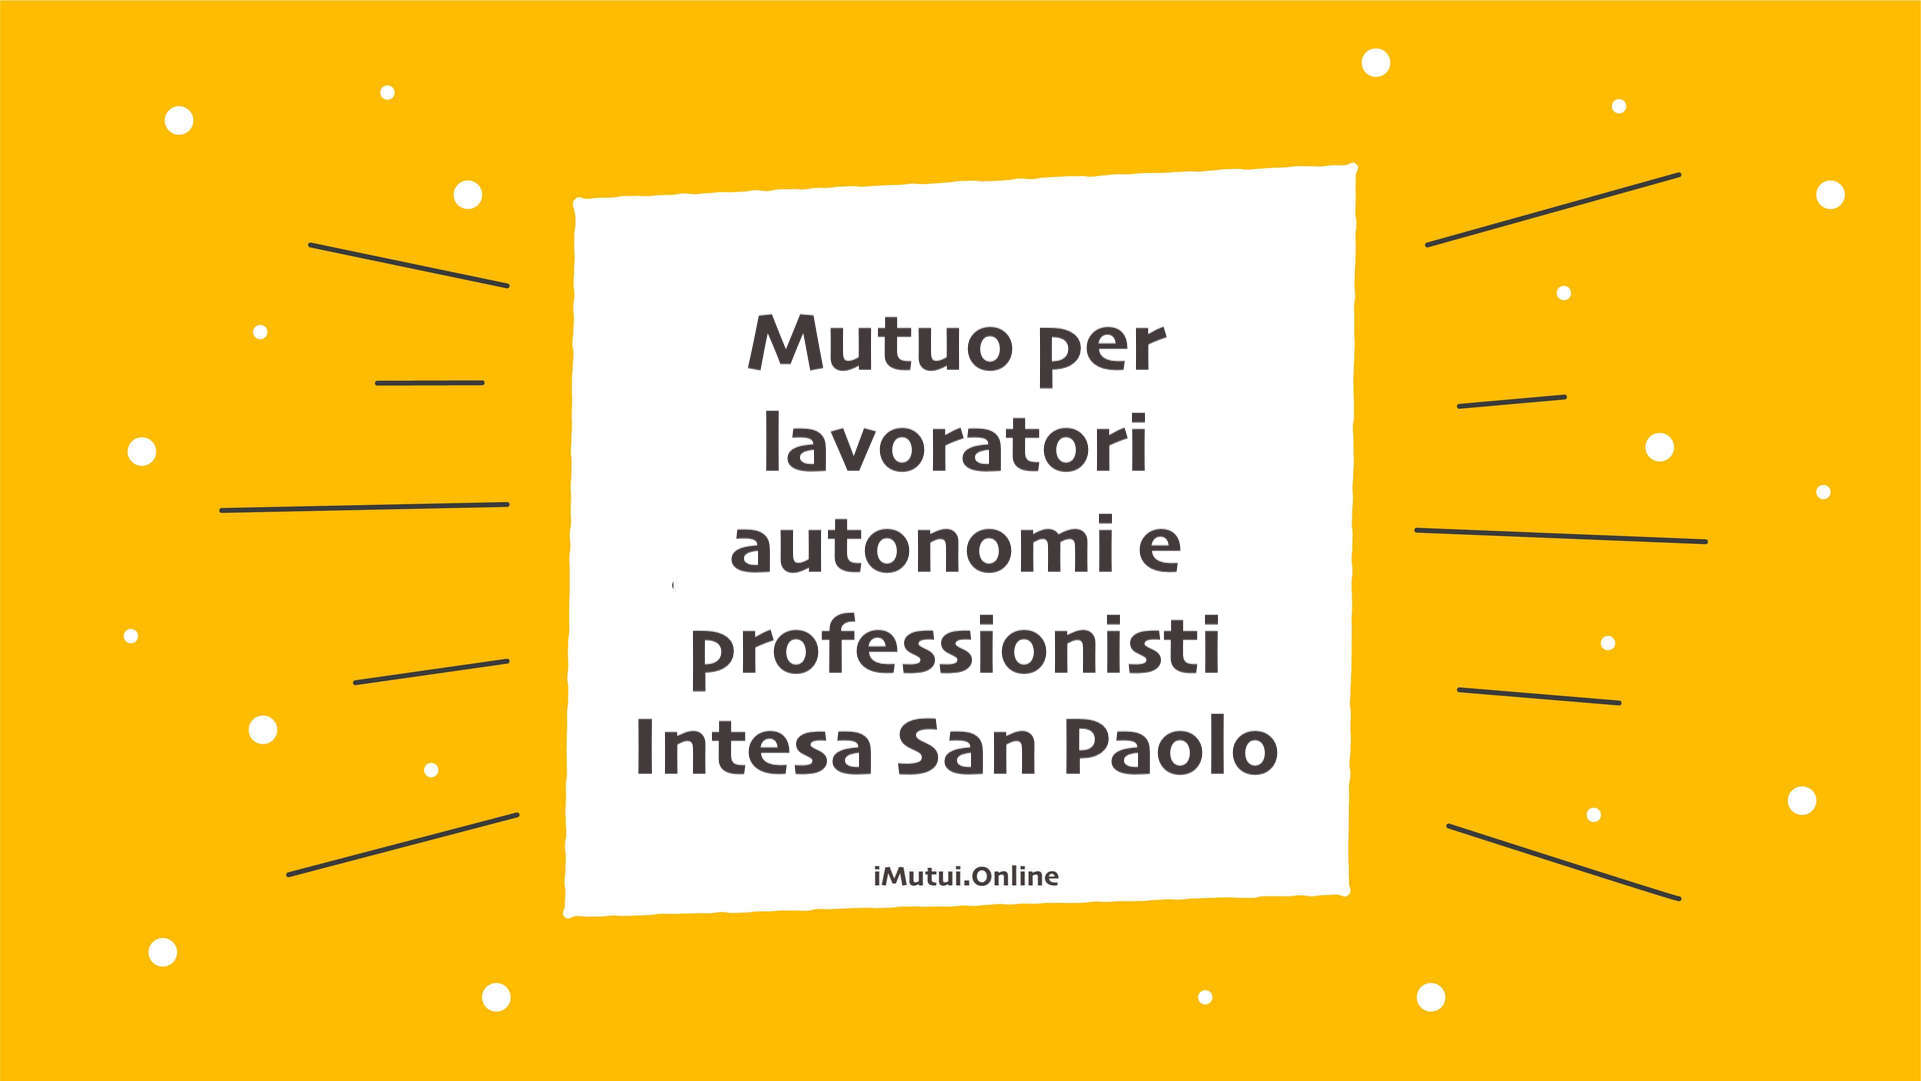 Mutuo per lavoratori autonomi e professionisti Intesa San Paolo